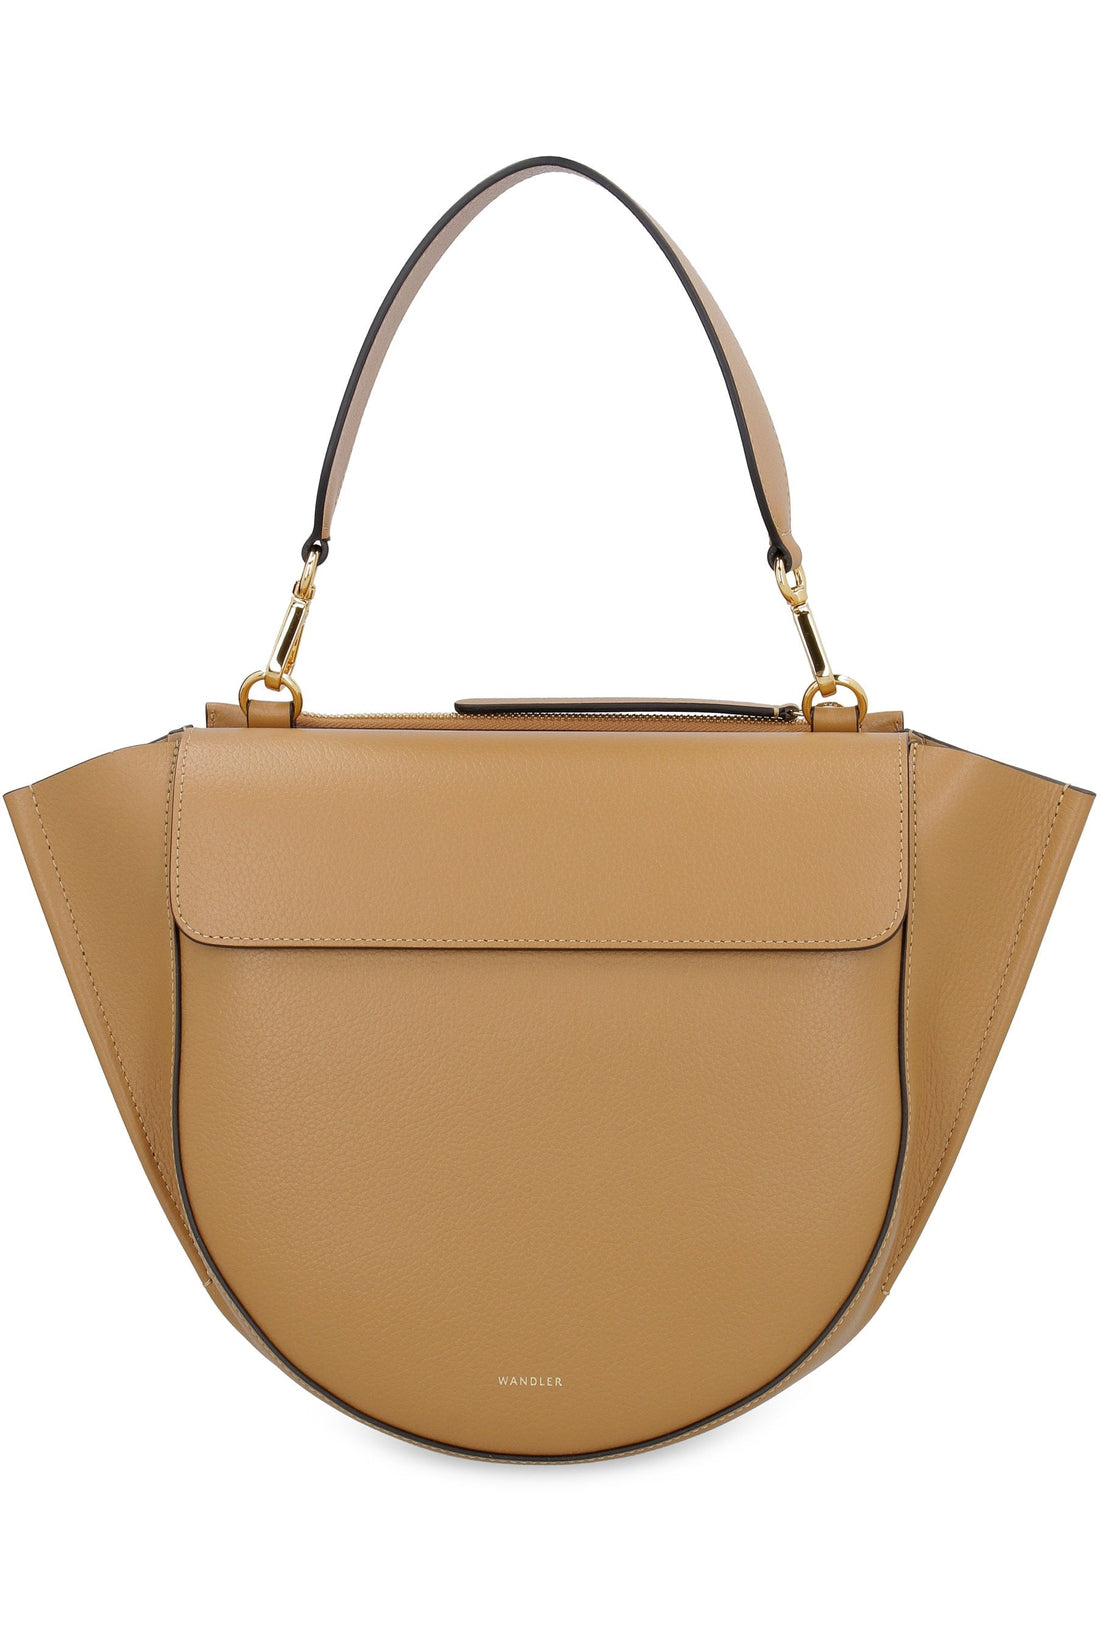 Wandler-OUTLET-SALE-Hortensia leather handbag-ARCHIVIST